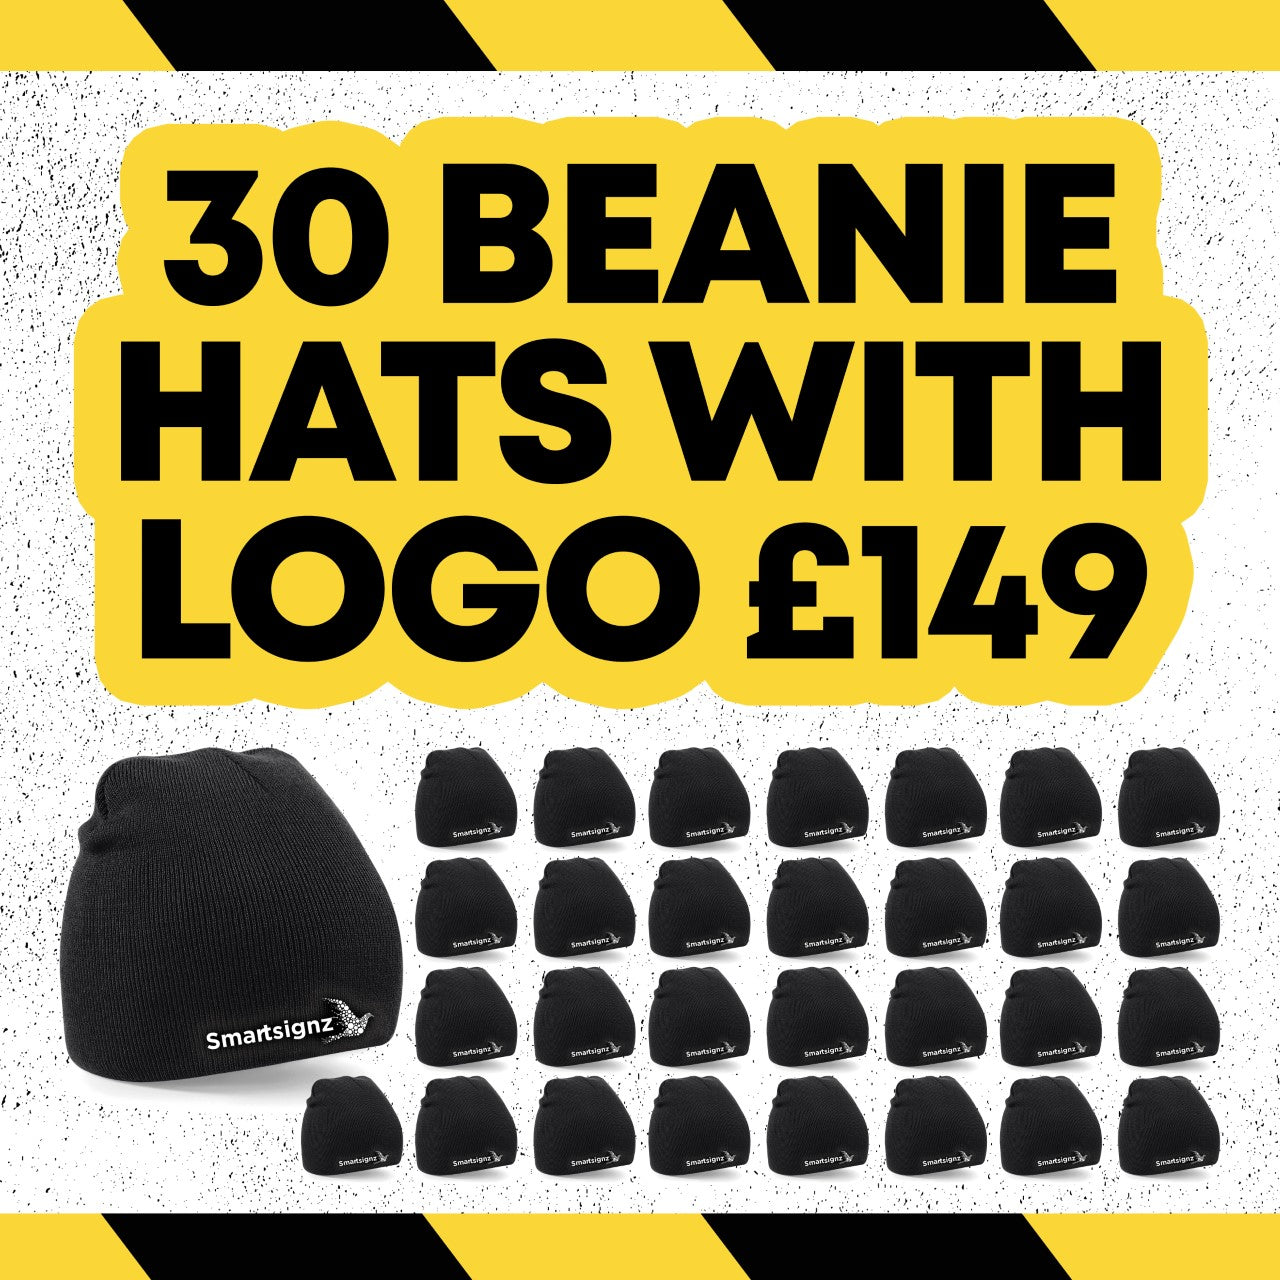 £149 Beanie Hat Deal